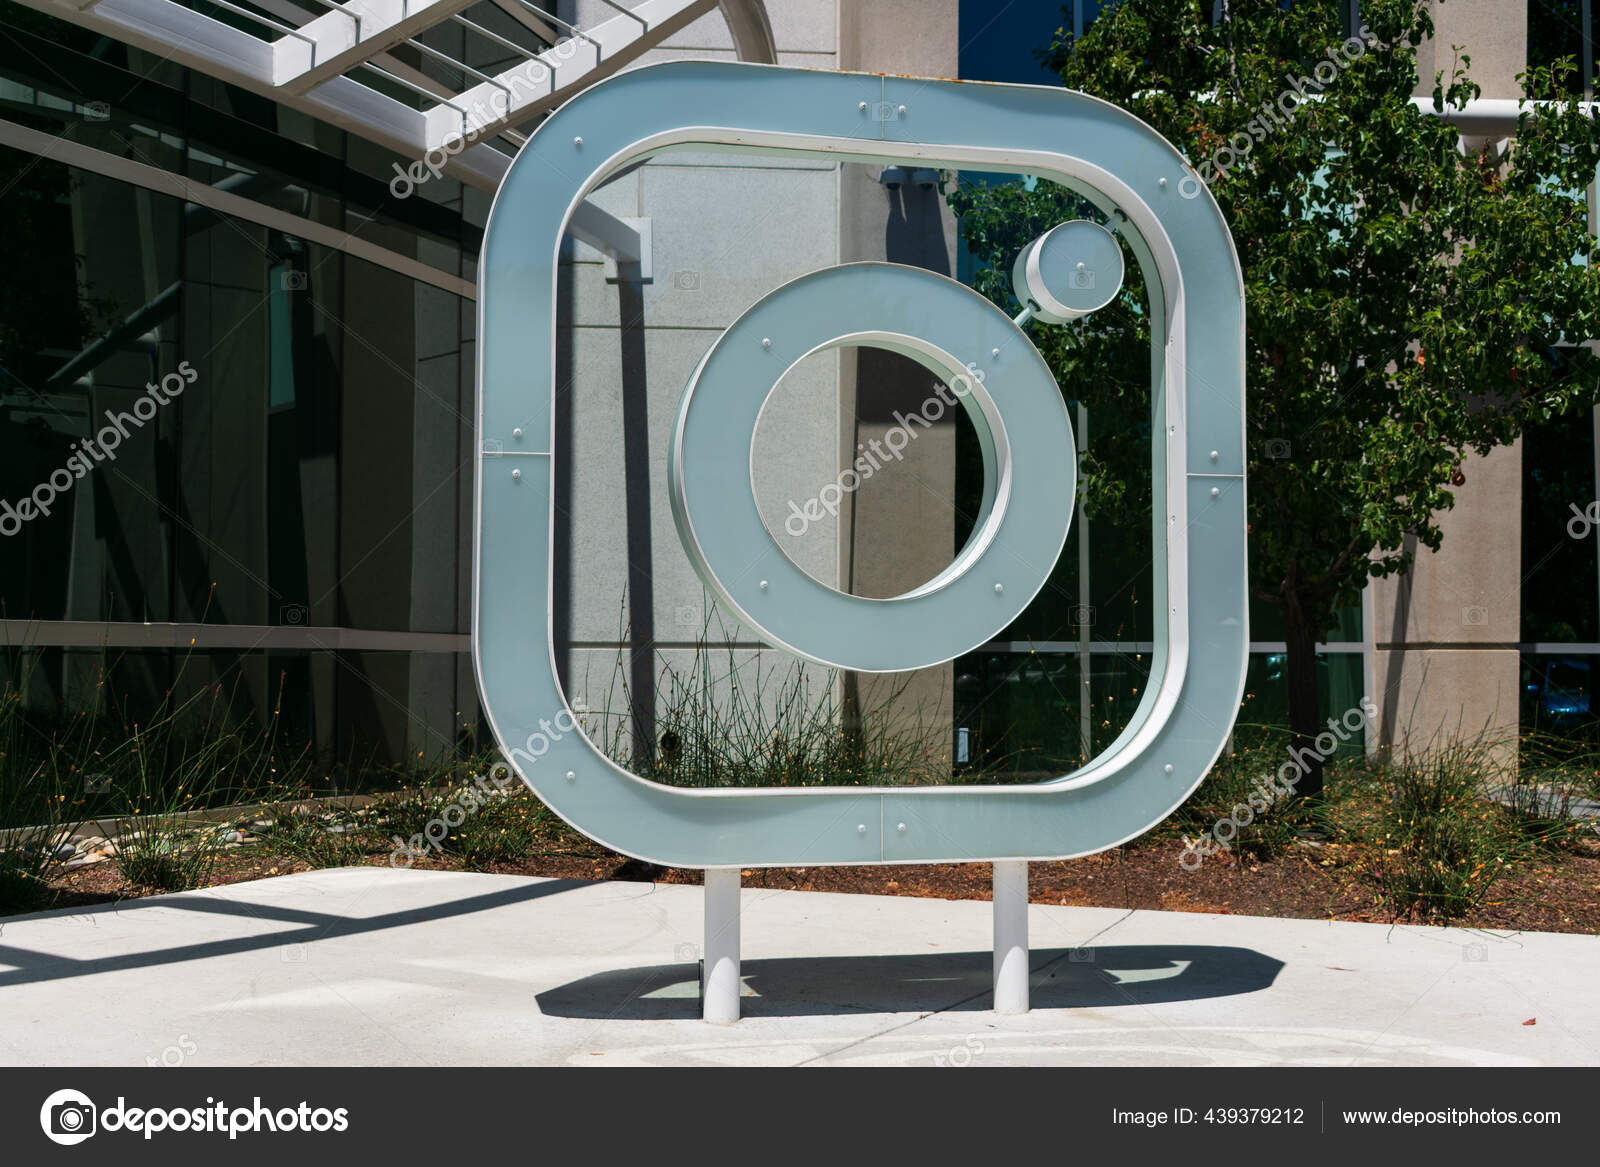 Biểu tượng Instagram tại trụ sở chính ở Thung lũng Silicon năm 2024 đã được cập nhật và sẽ khiến người xem cảm thấy ngạc nhiên và hào hứng. Với một thiết kế đẹp mắt, biểu tượng này sẽ truyền tải được thông điệp tích cực và gần gũi đến với người dùng.